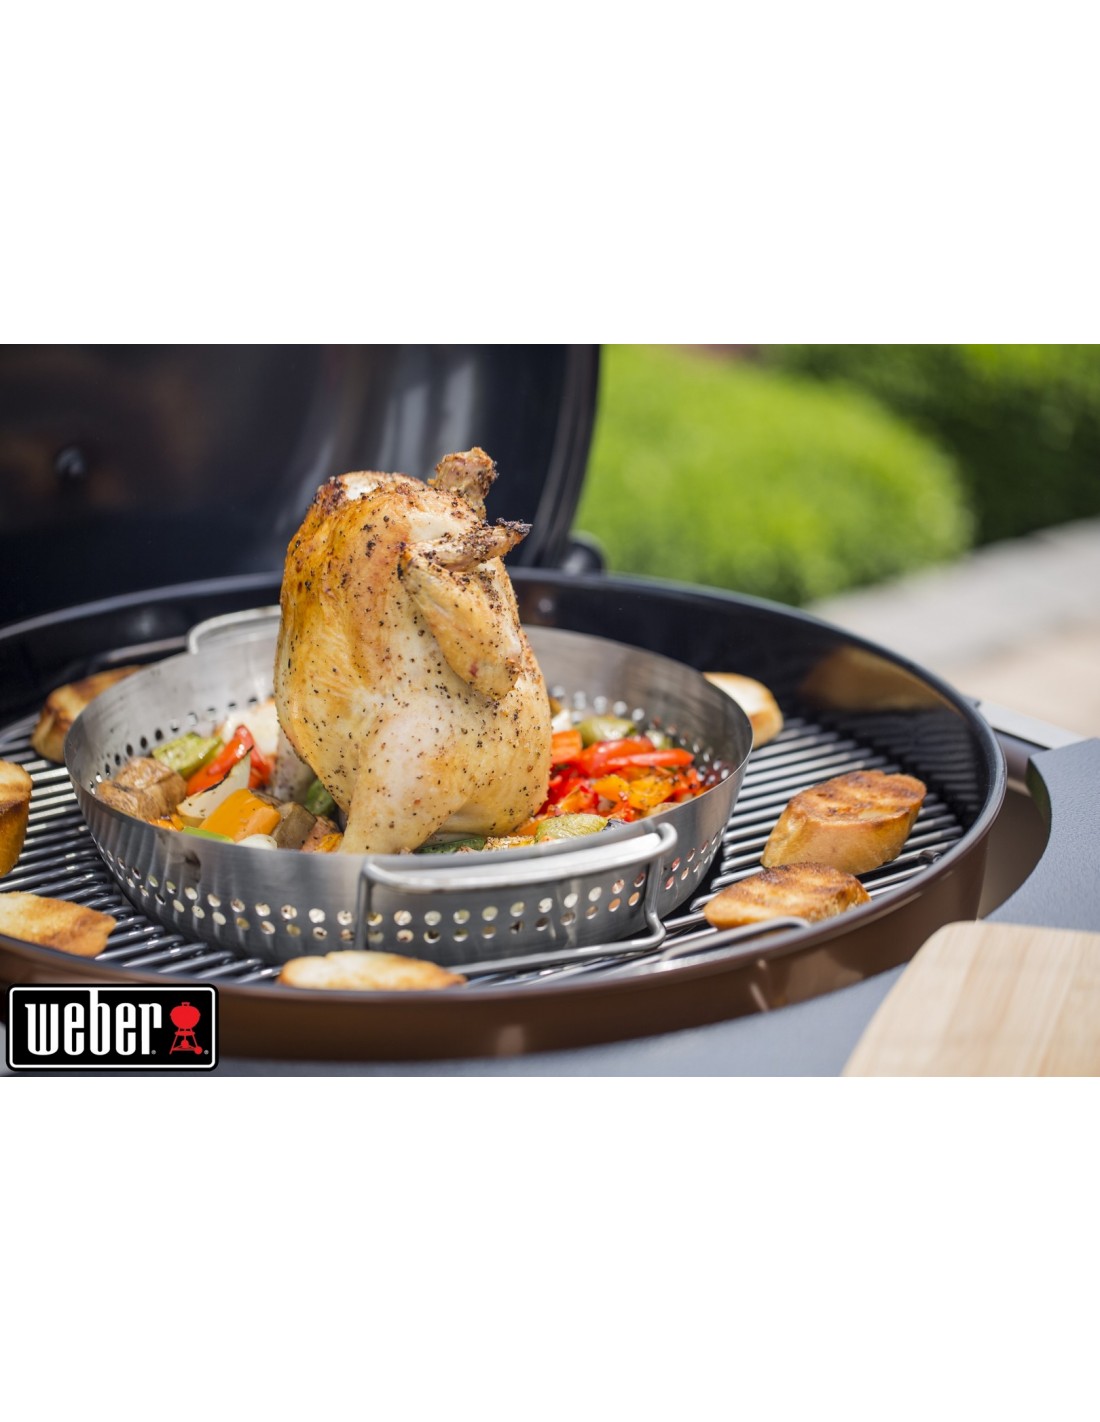 Support de cuisson pour poulet - Weber - En inox - Pour Gourmet BBQ System  Weber